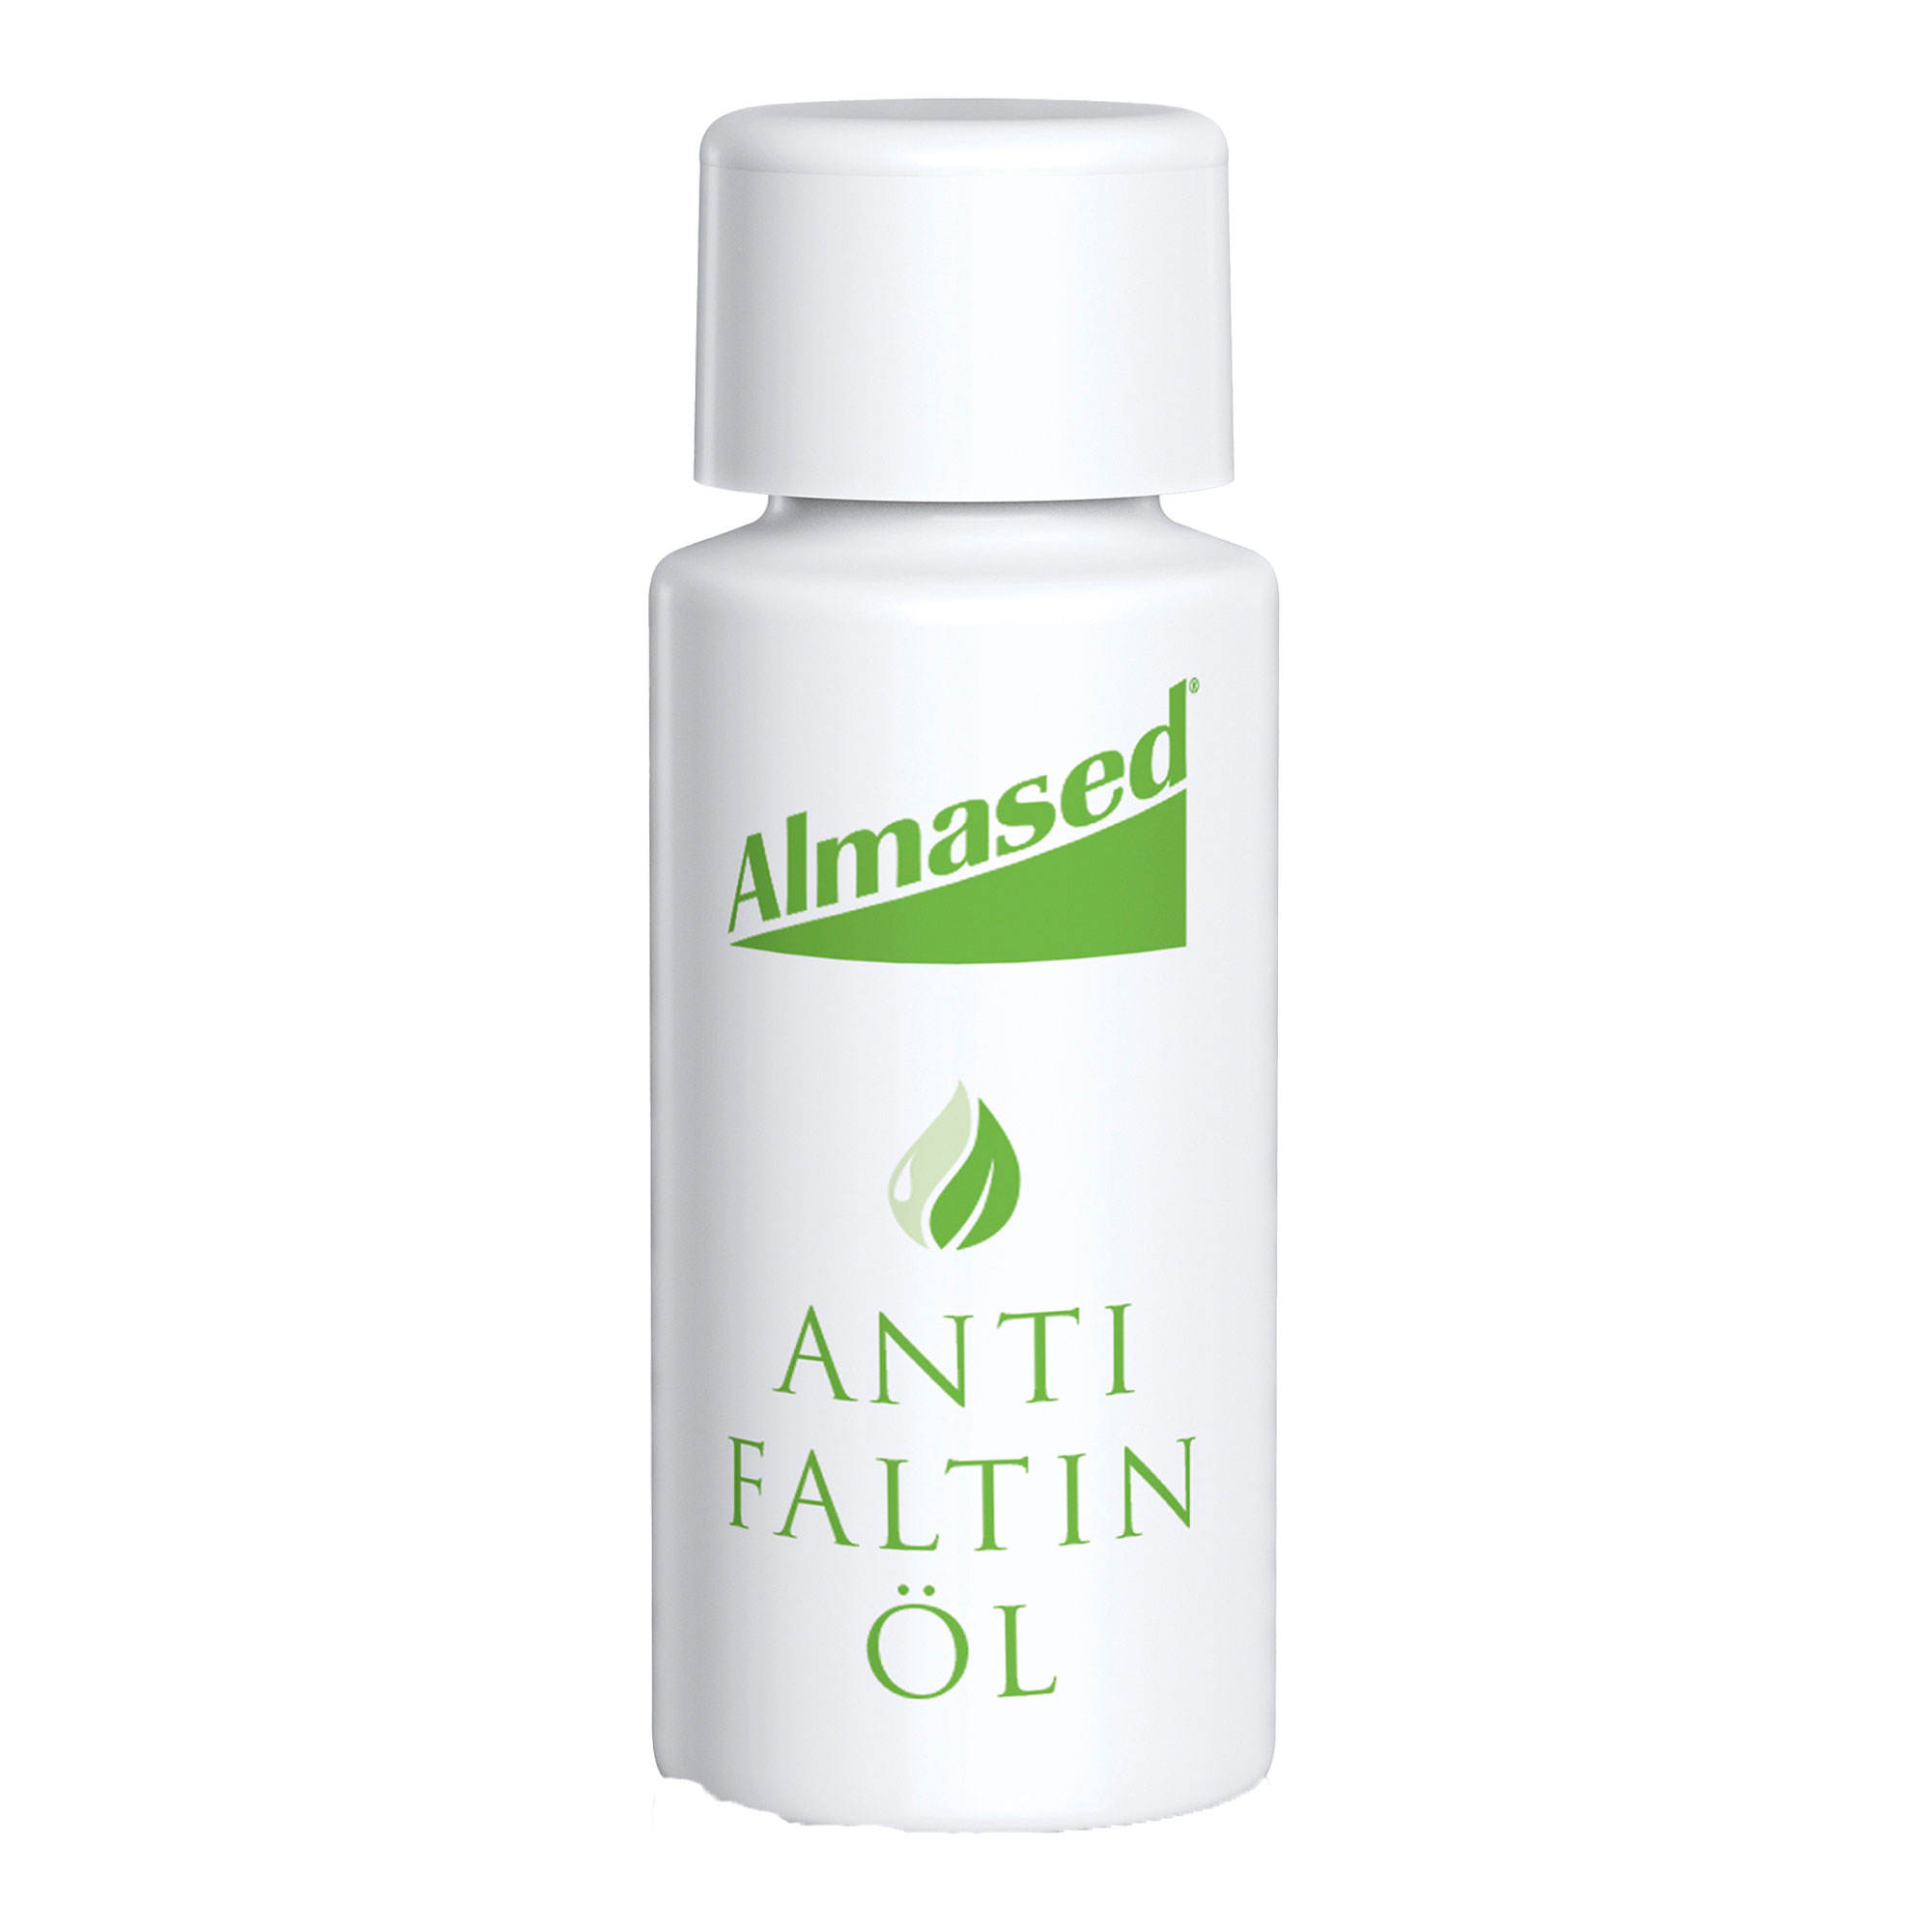 Antifaltin-Öl pflegt intensiv durch fernöstliche Tradition.